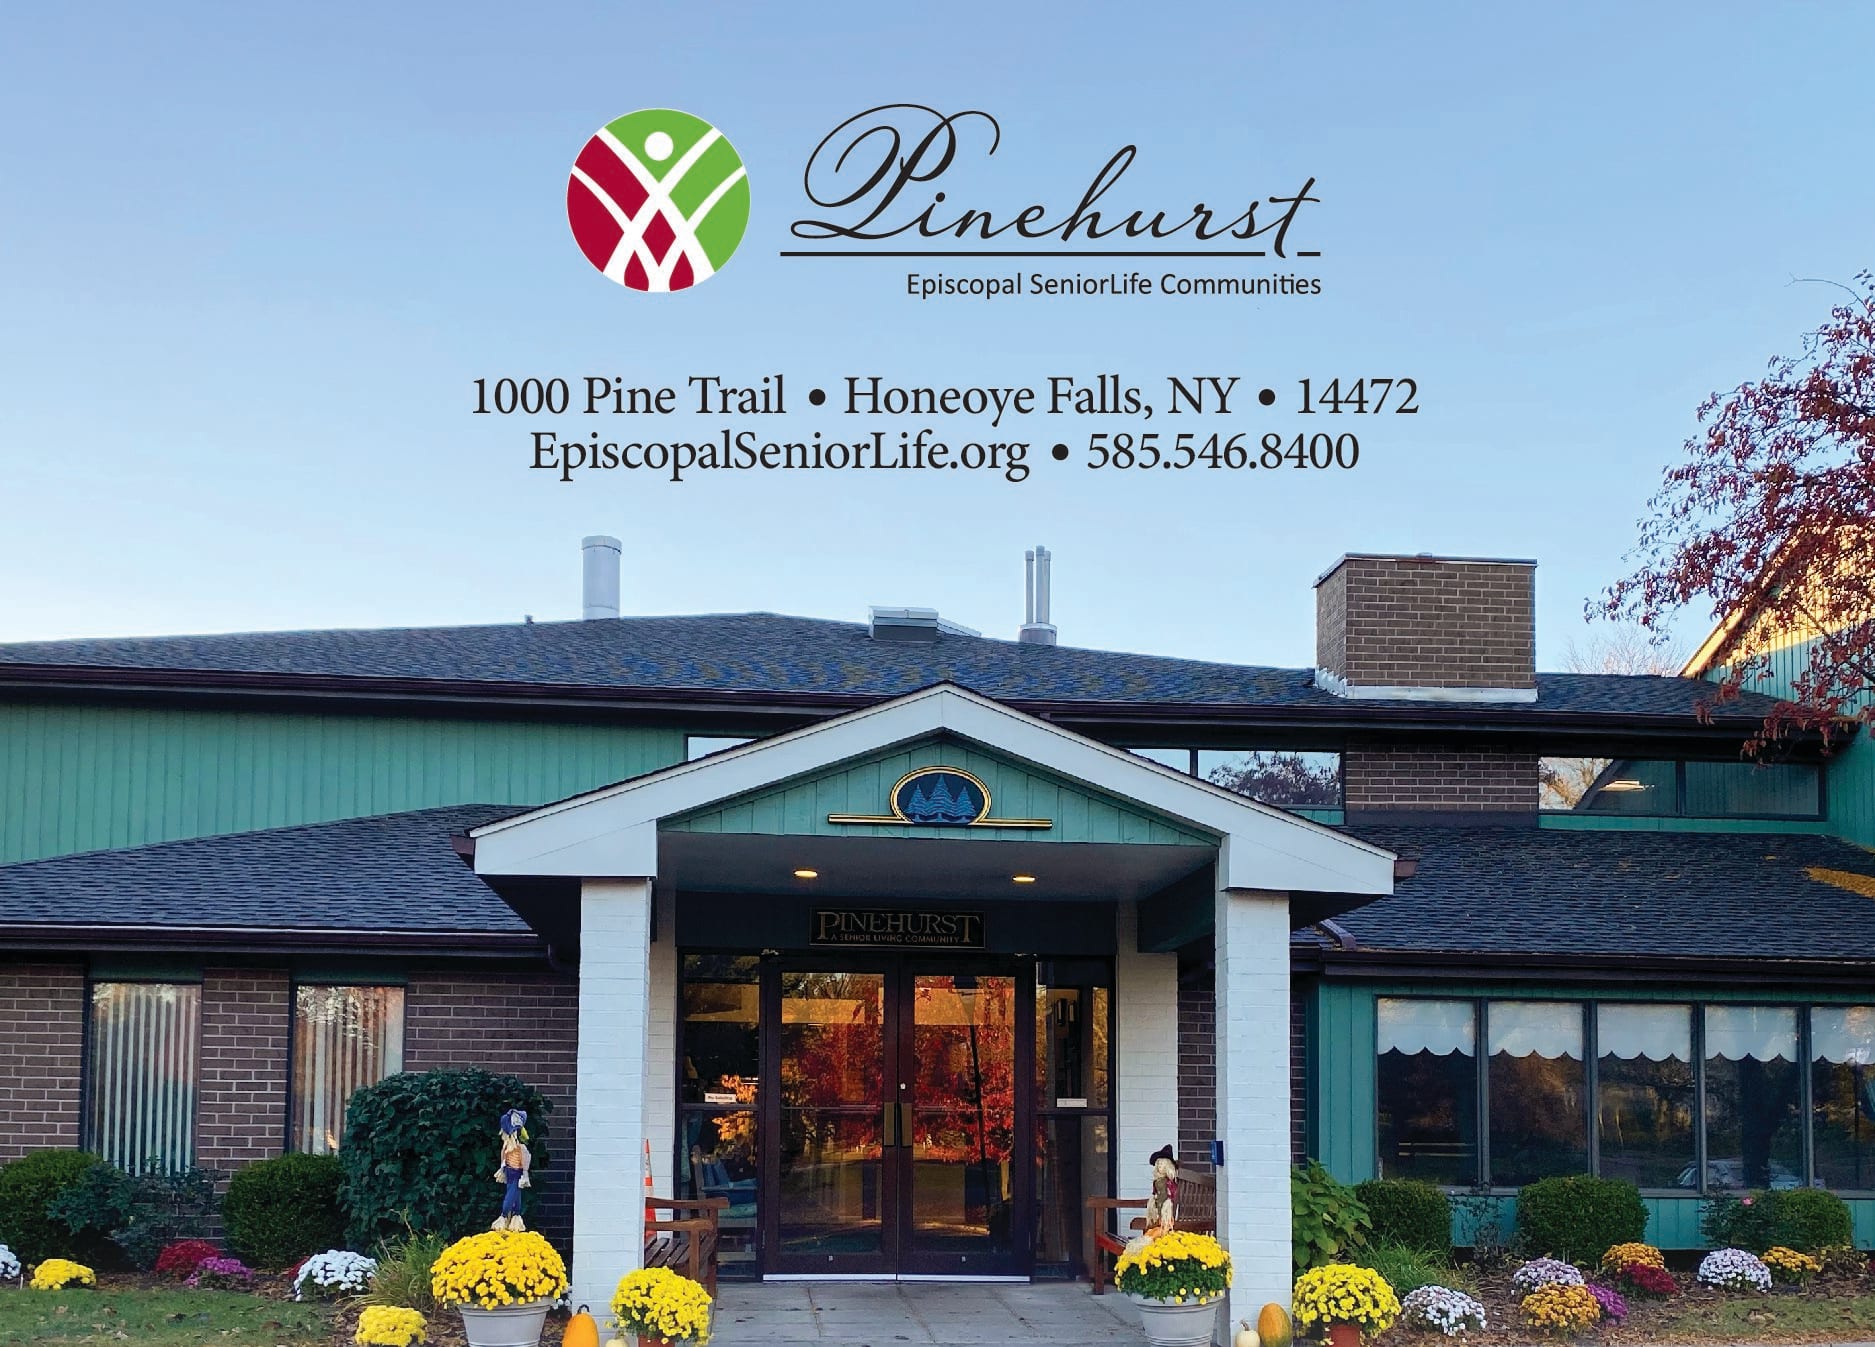 Pinehurst, Episcopal SeniorLife Communities 